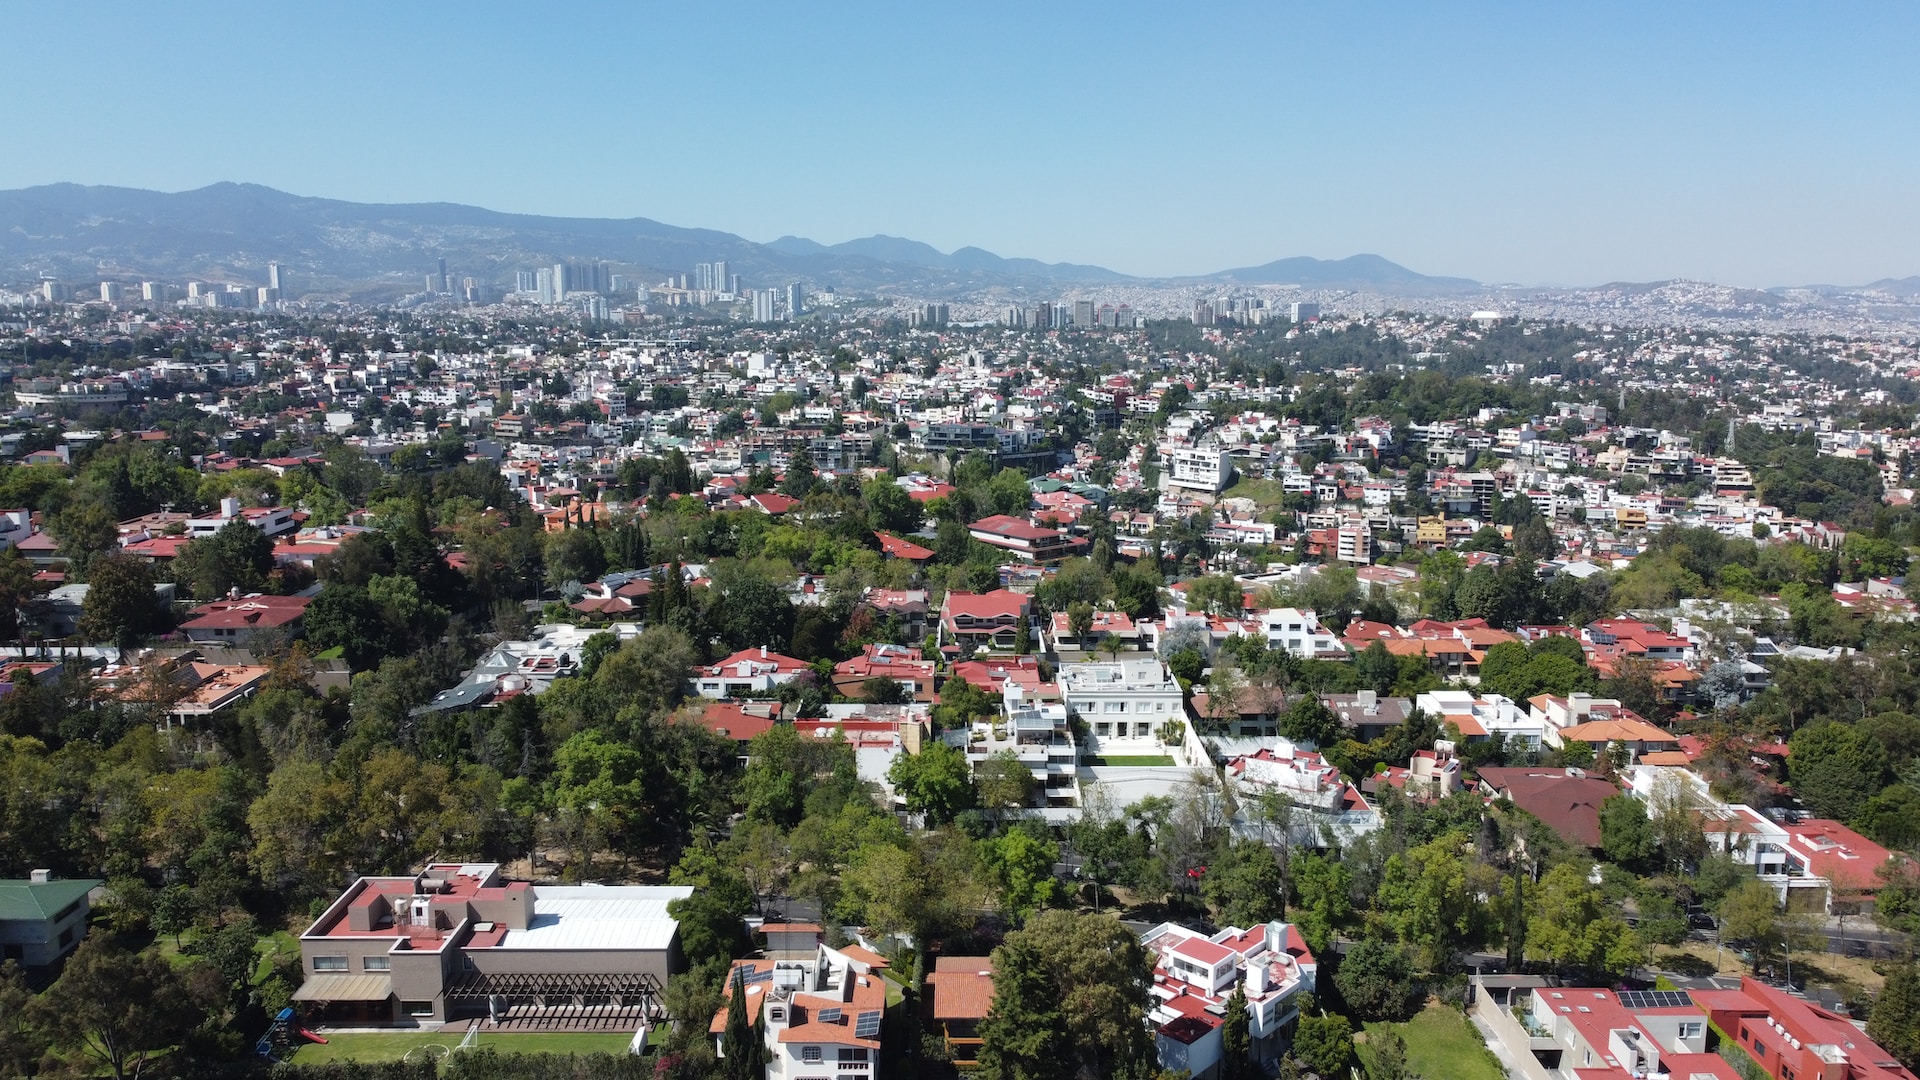 Ciudad de México se hunde: ¿qué depara el futuro a esta urbe de 8,8 millones de habitantes?